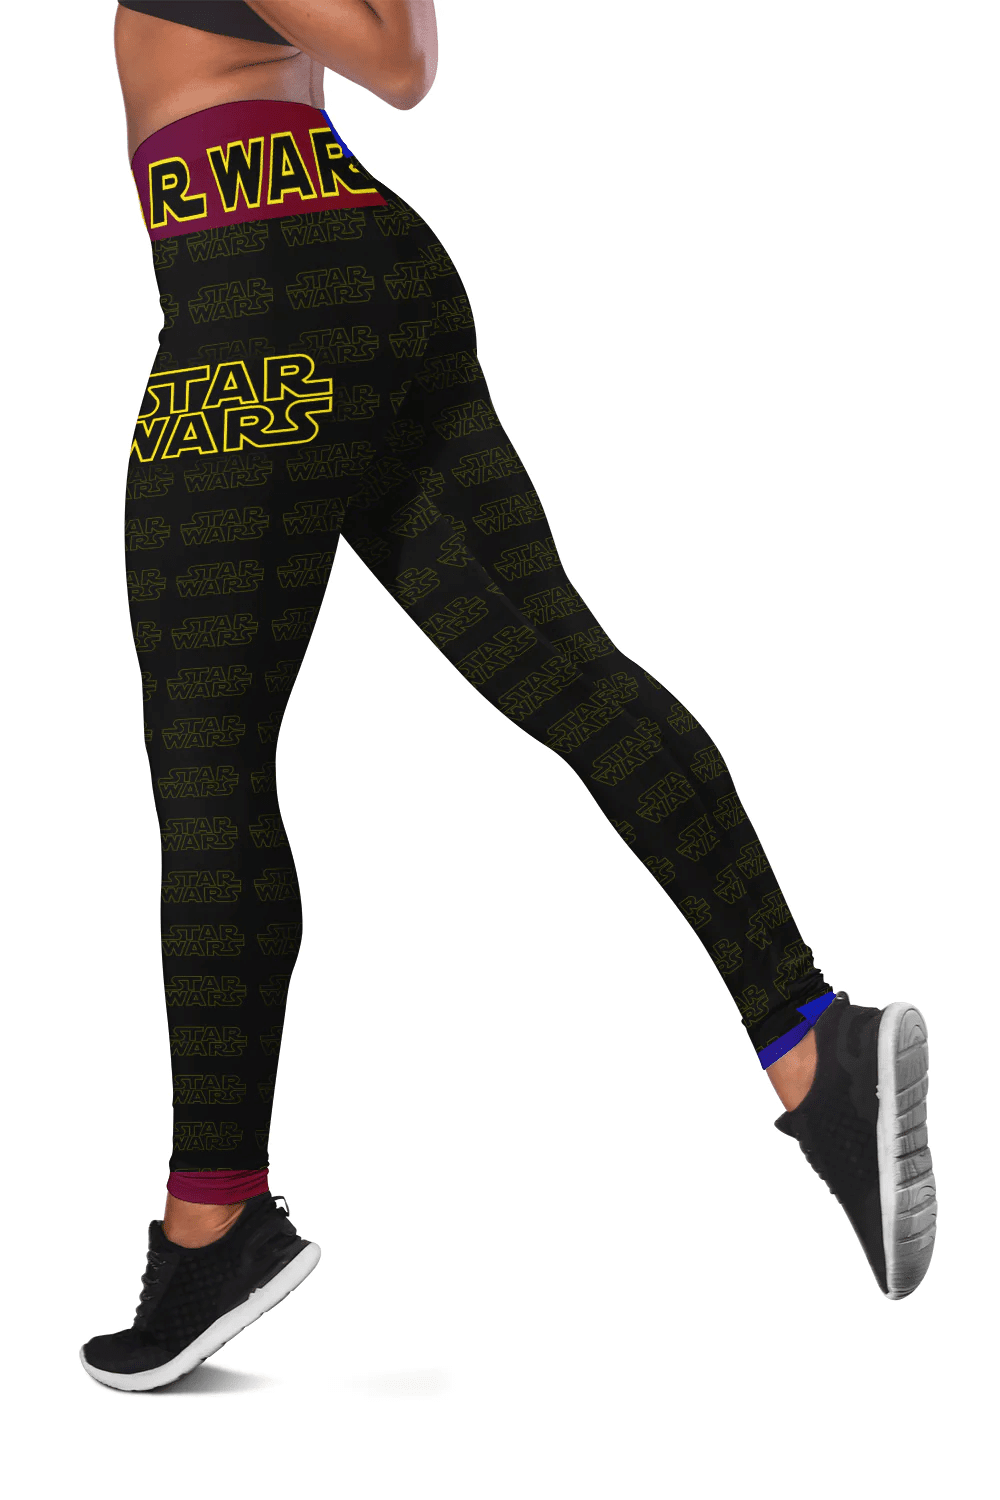 Star Wars New Legging Christmas Gift